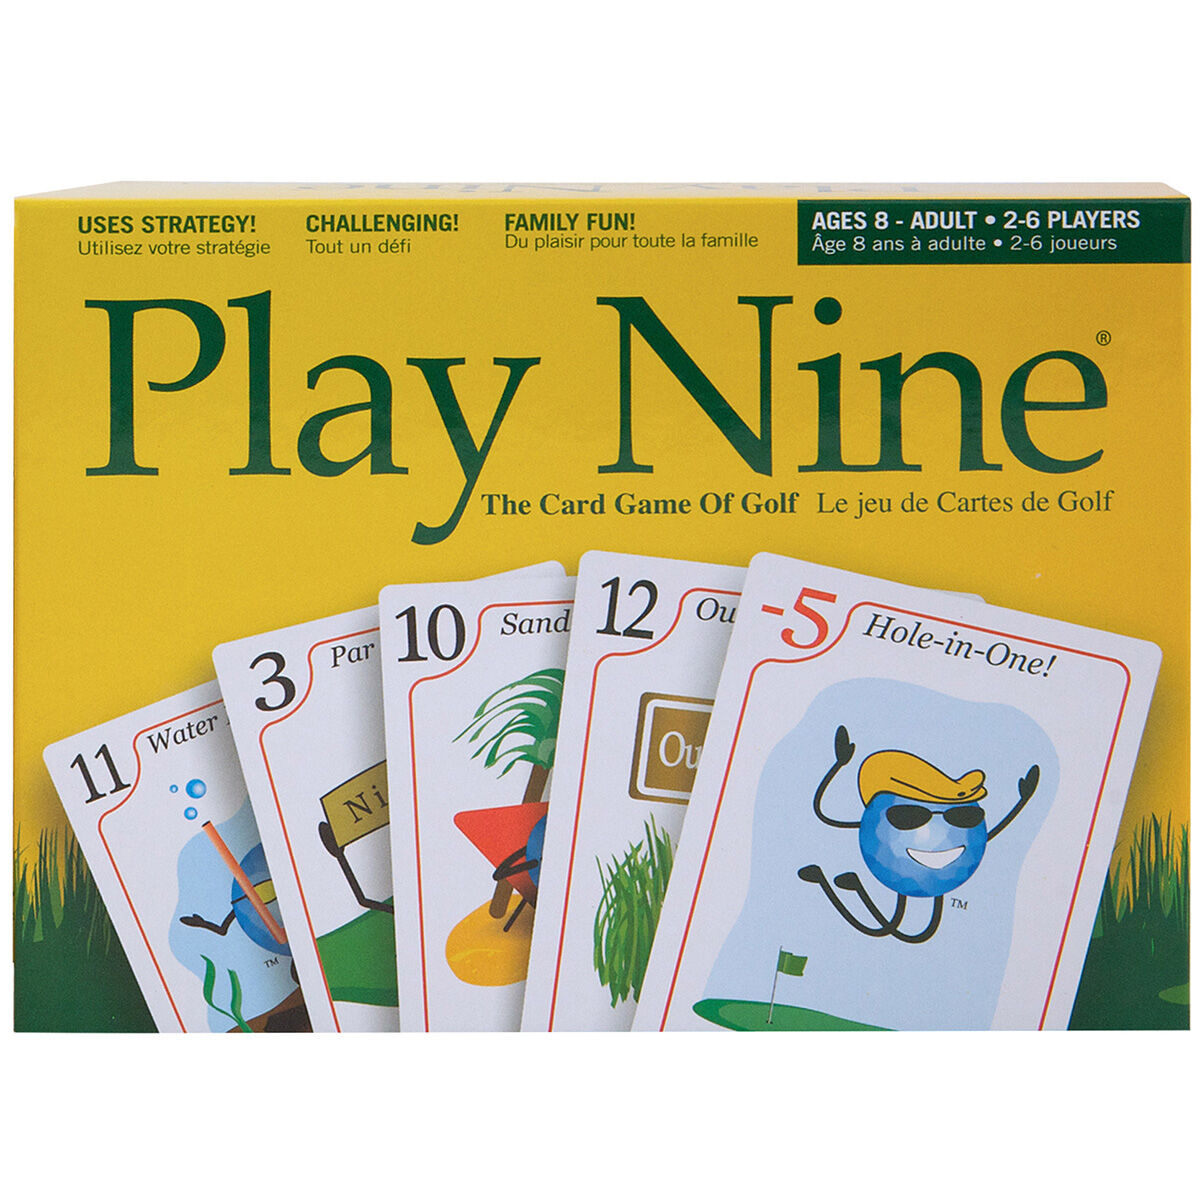 play nine scoring